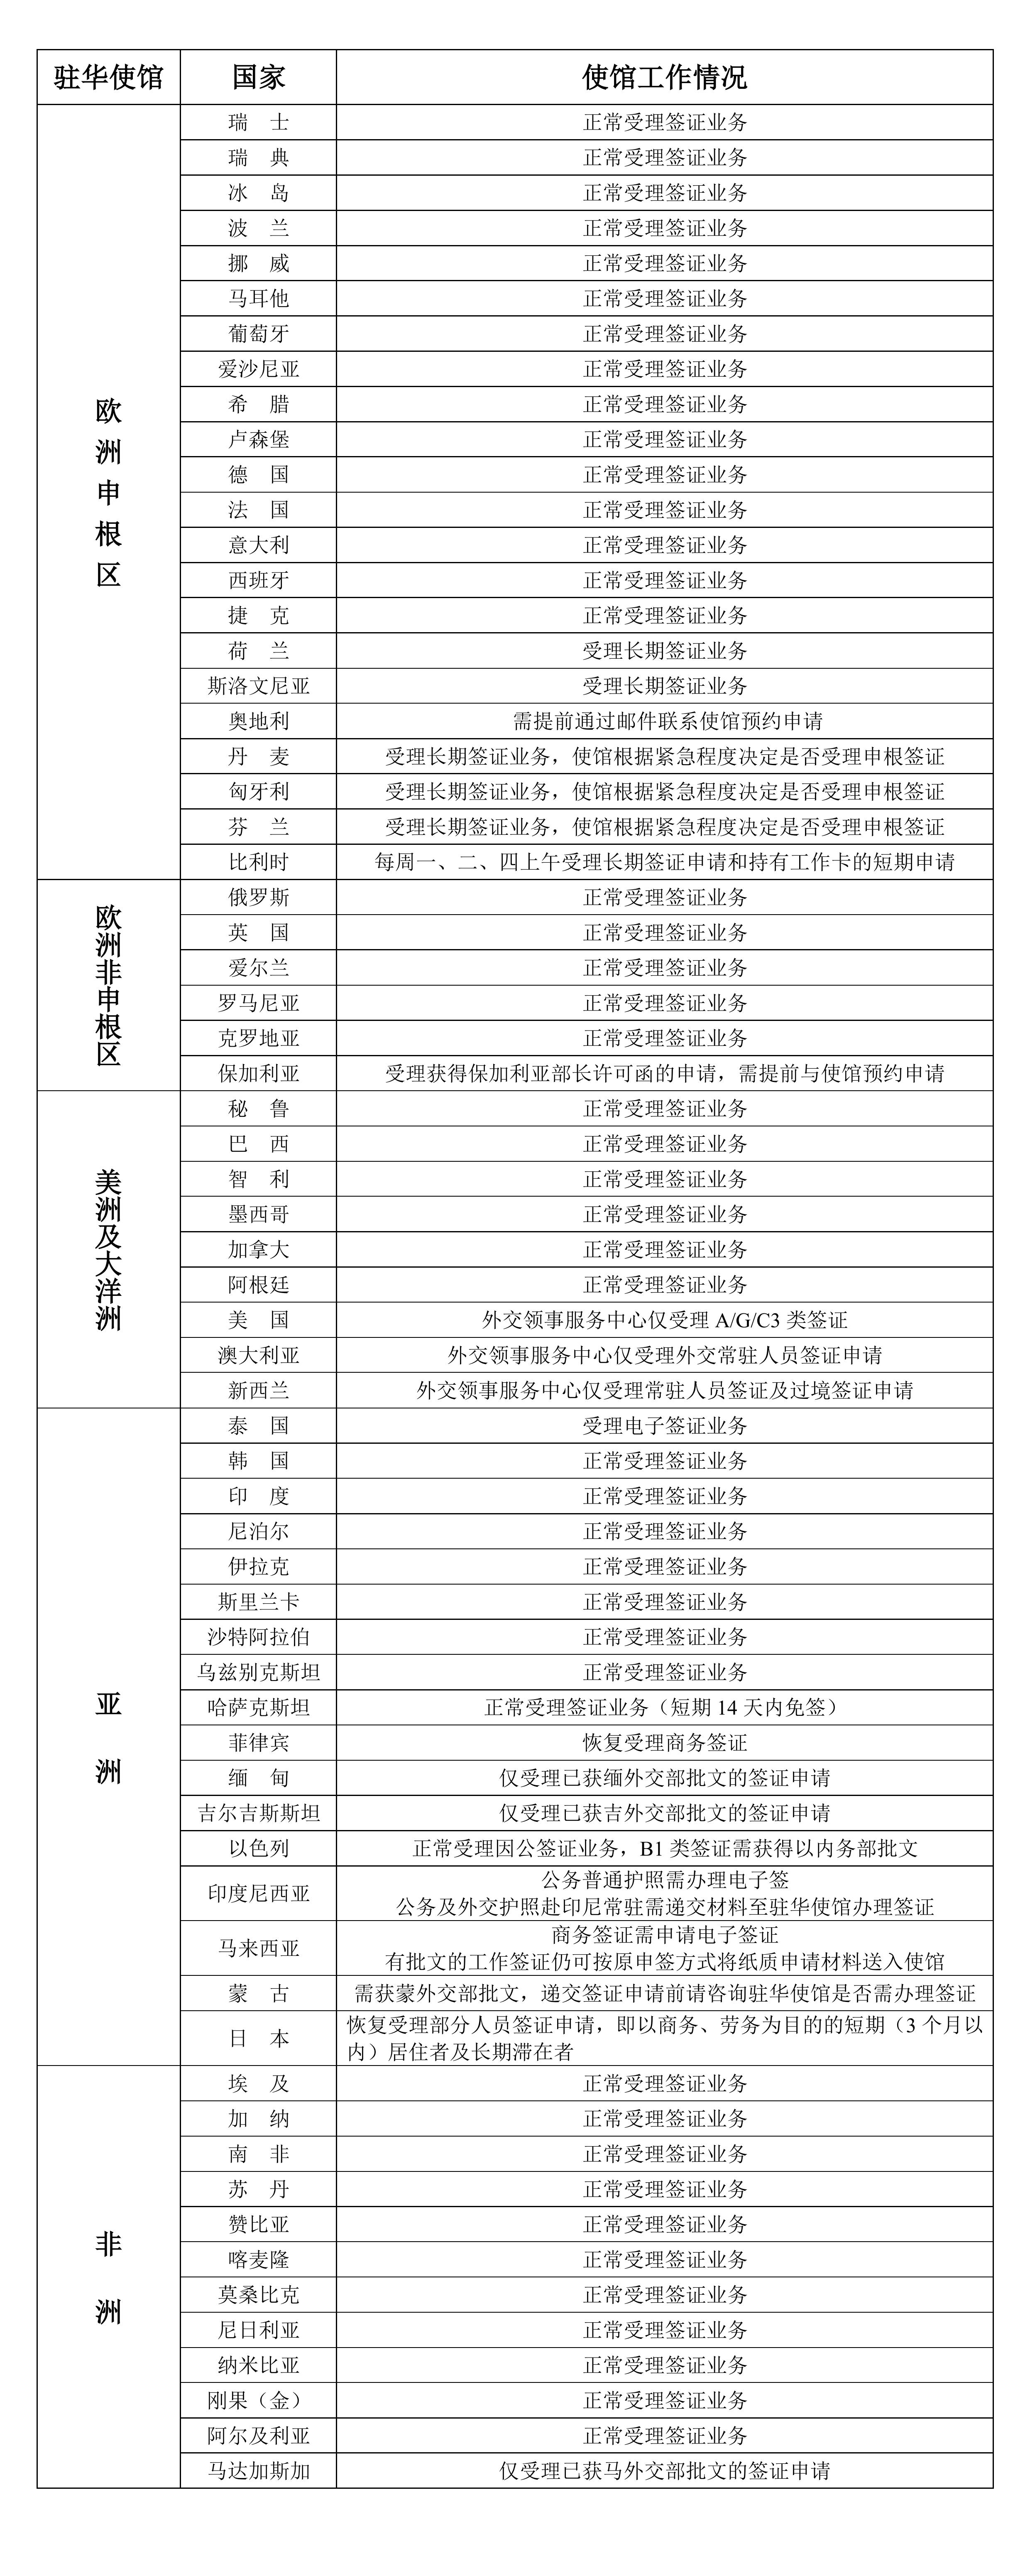 2022年８月１日部分驻华使馆工作情况统计表_00.jpg